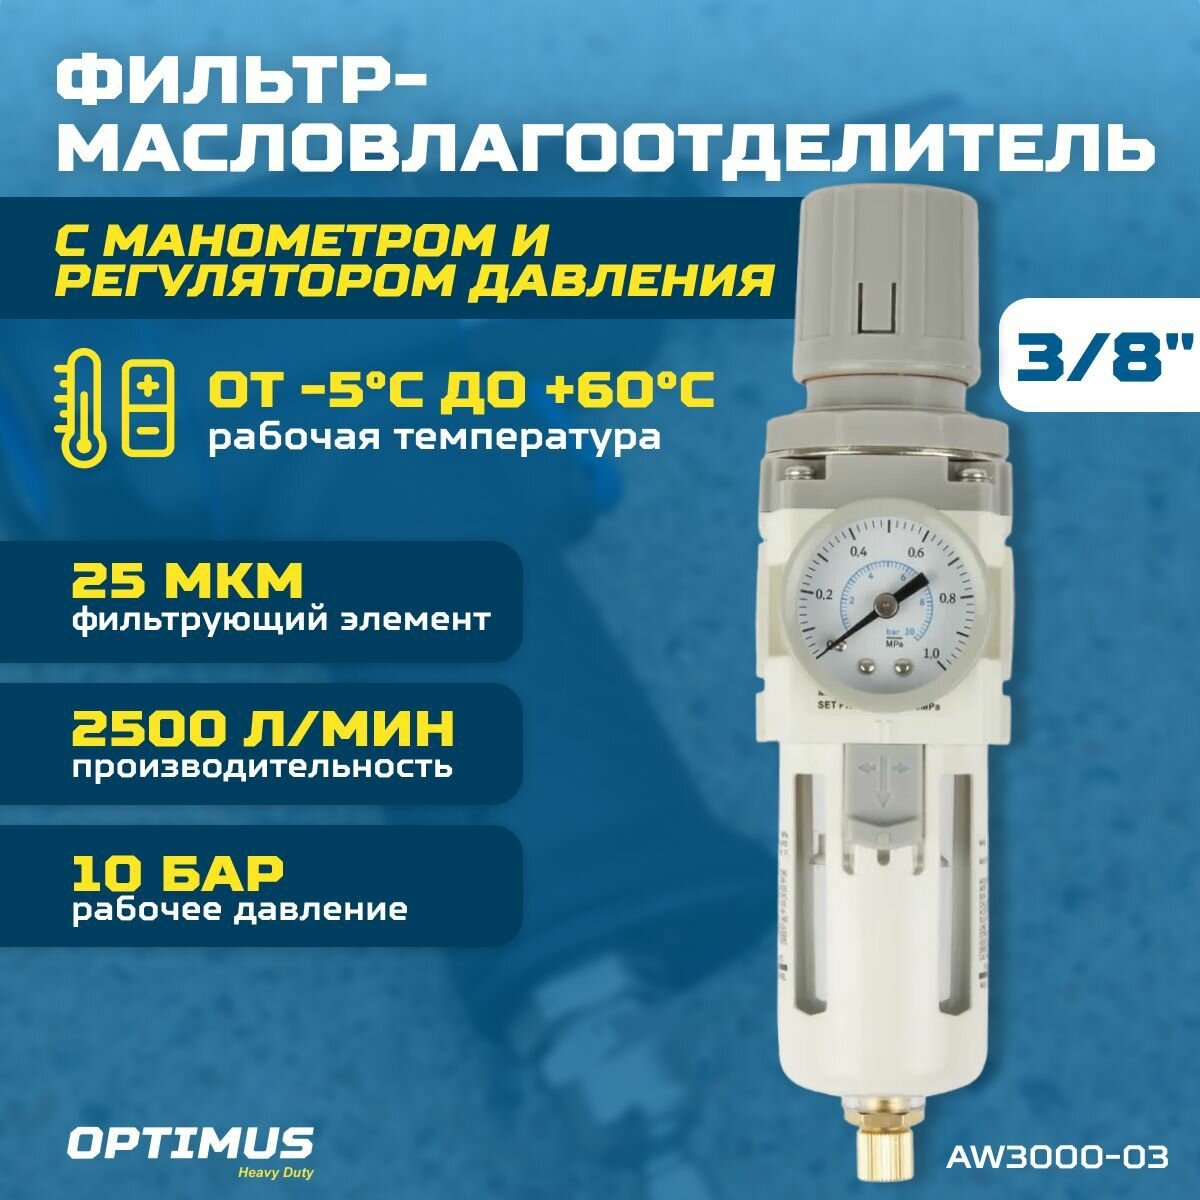 Фильтр-масловлагоотделитель с манометром и регулятором давления 3/8" OPTIMUS HEAVY DUTY AW3000-03